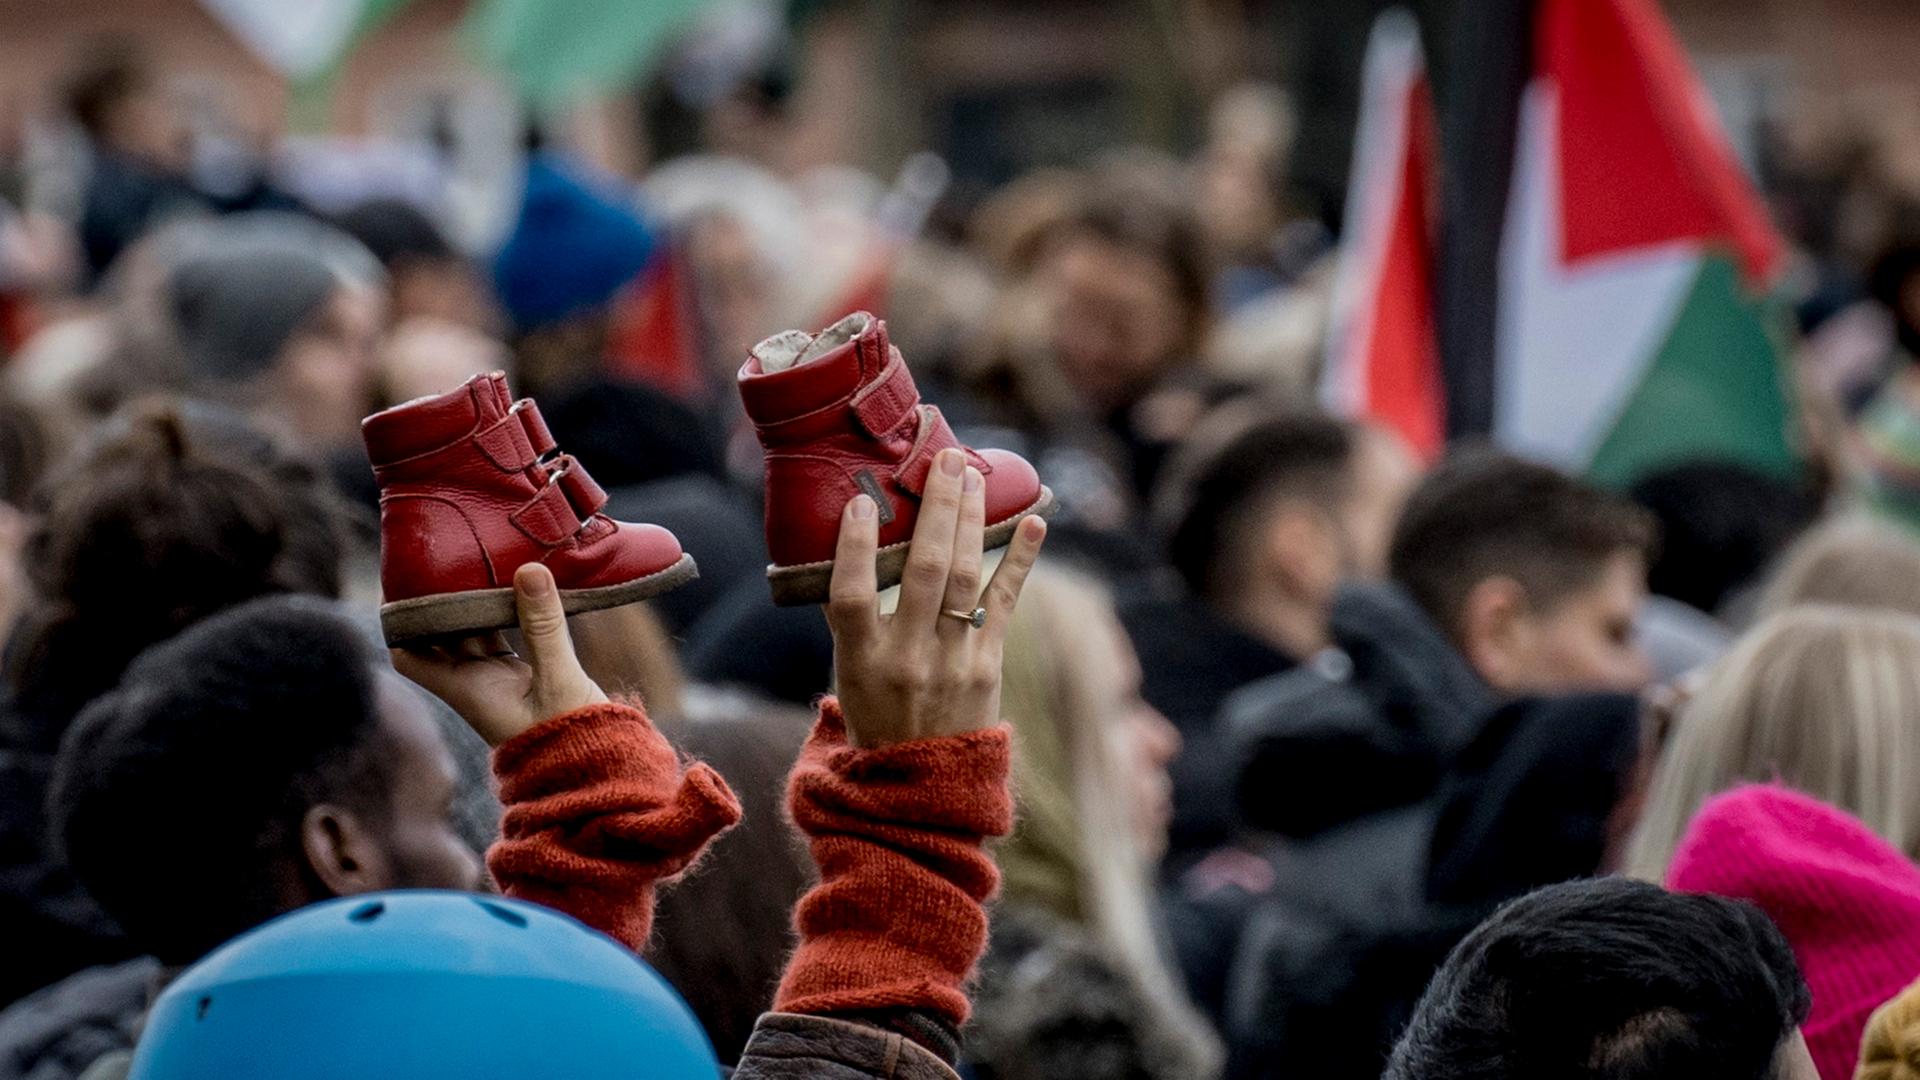 Menschen demonstrieren am Christiansborg Schlossplatz für die Palästinenser im Gazastreifen.